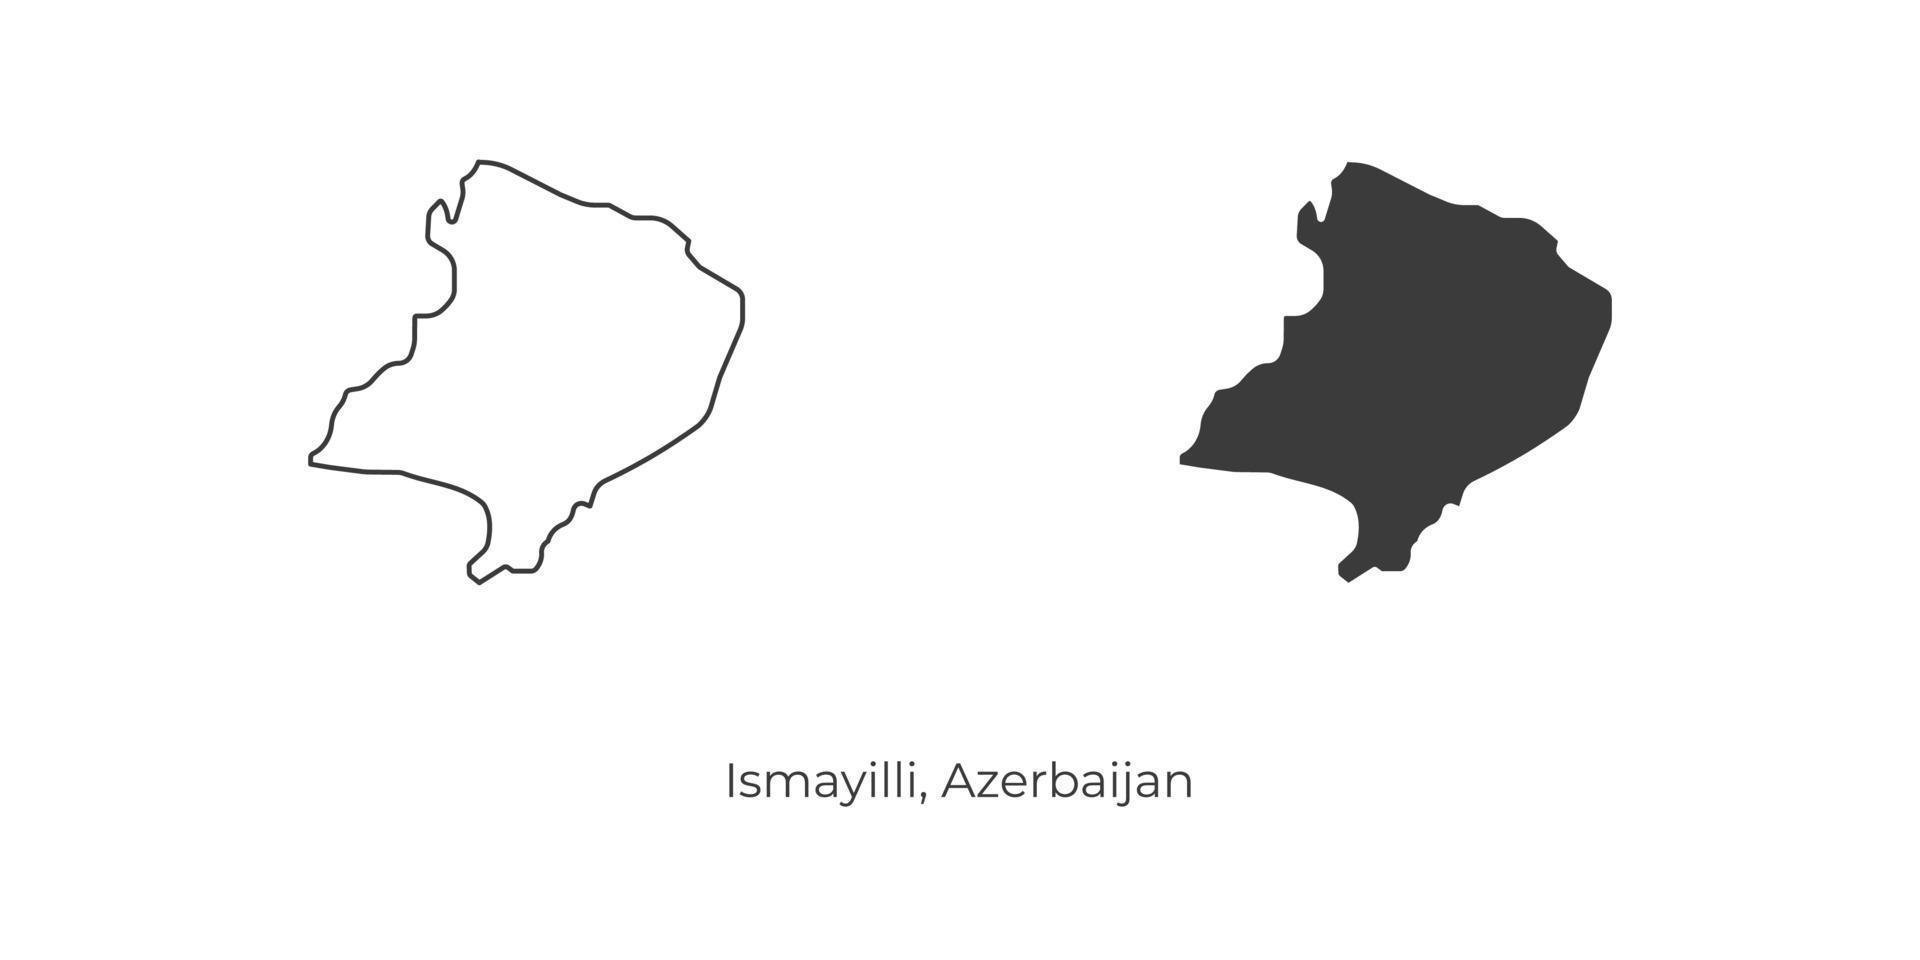 ilustração em vetor simples do mapa de ismayilli, azerbaijão.